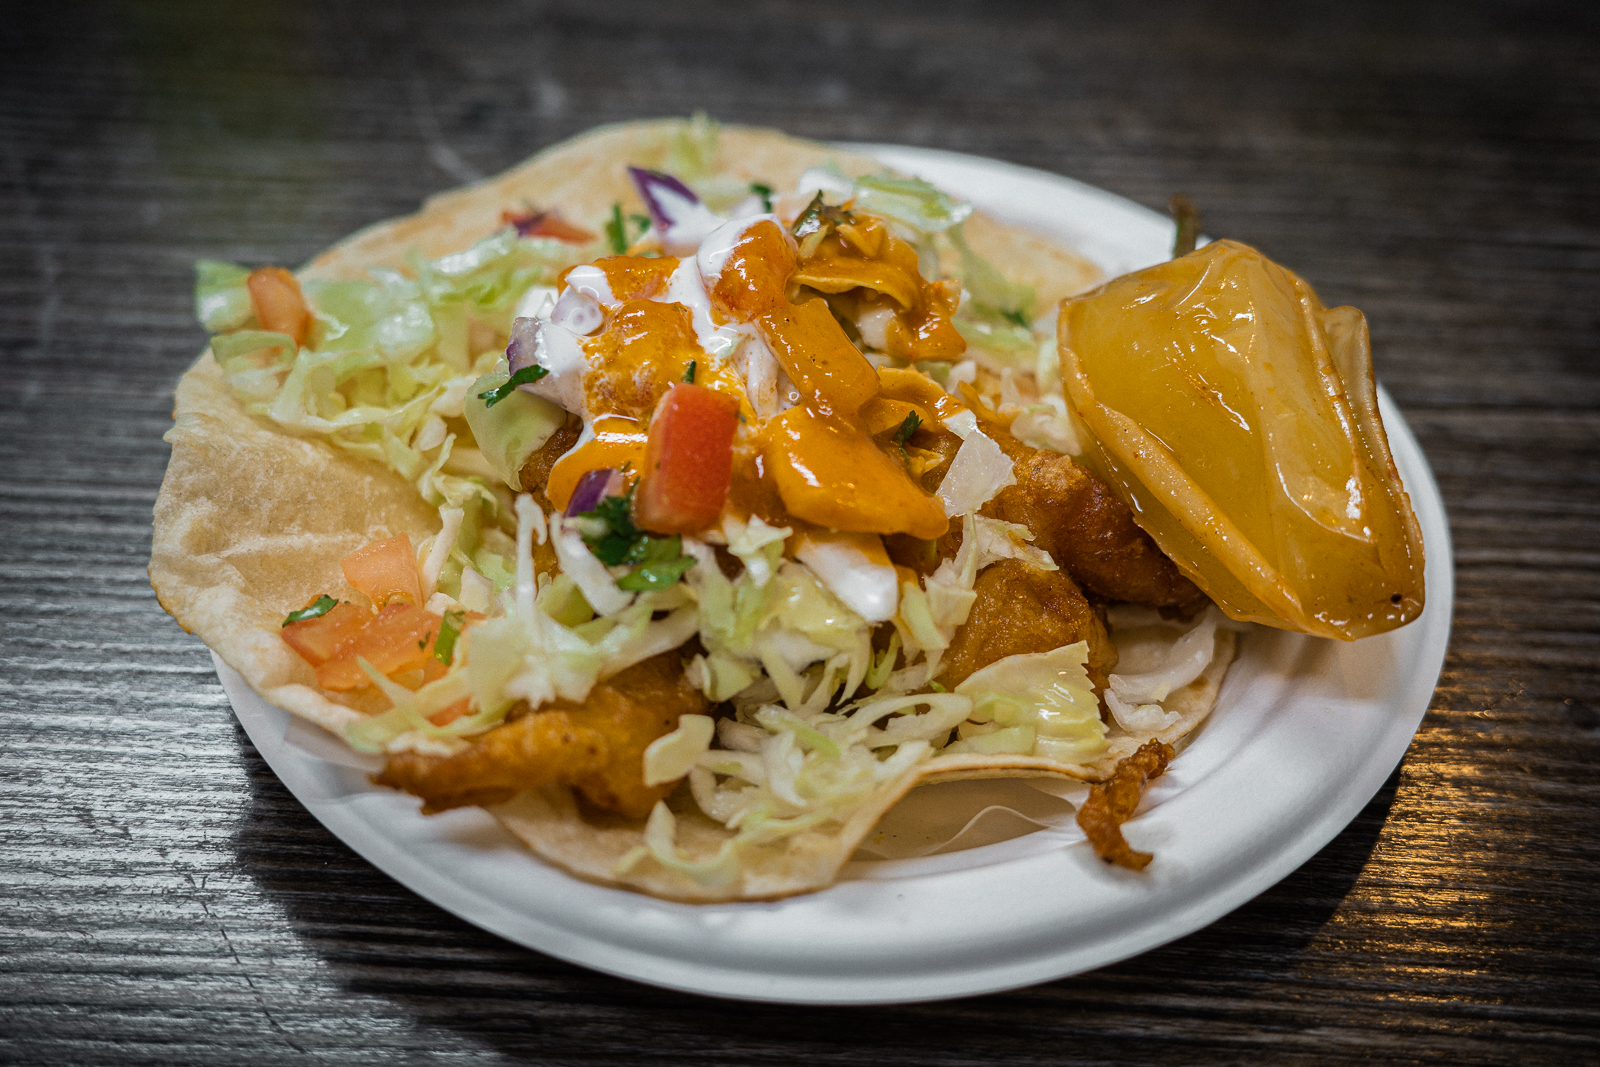 Tacos de pescado at Tacos Baja, East L.A.